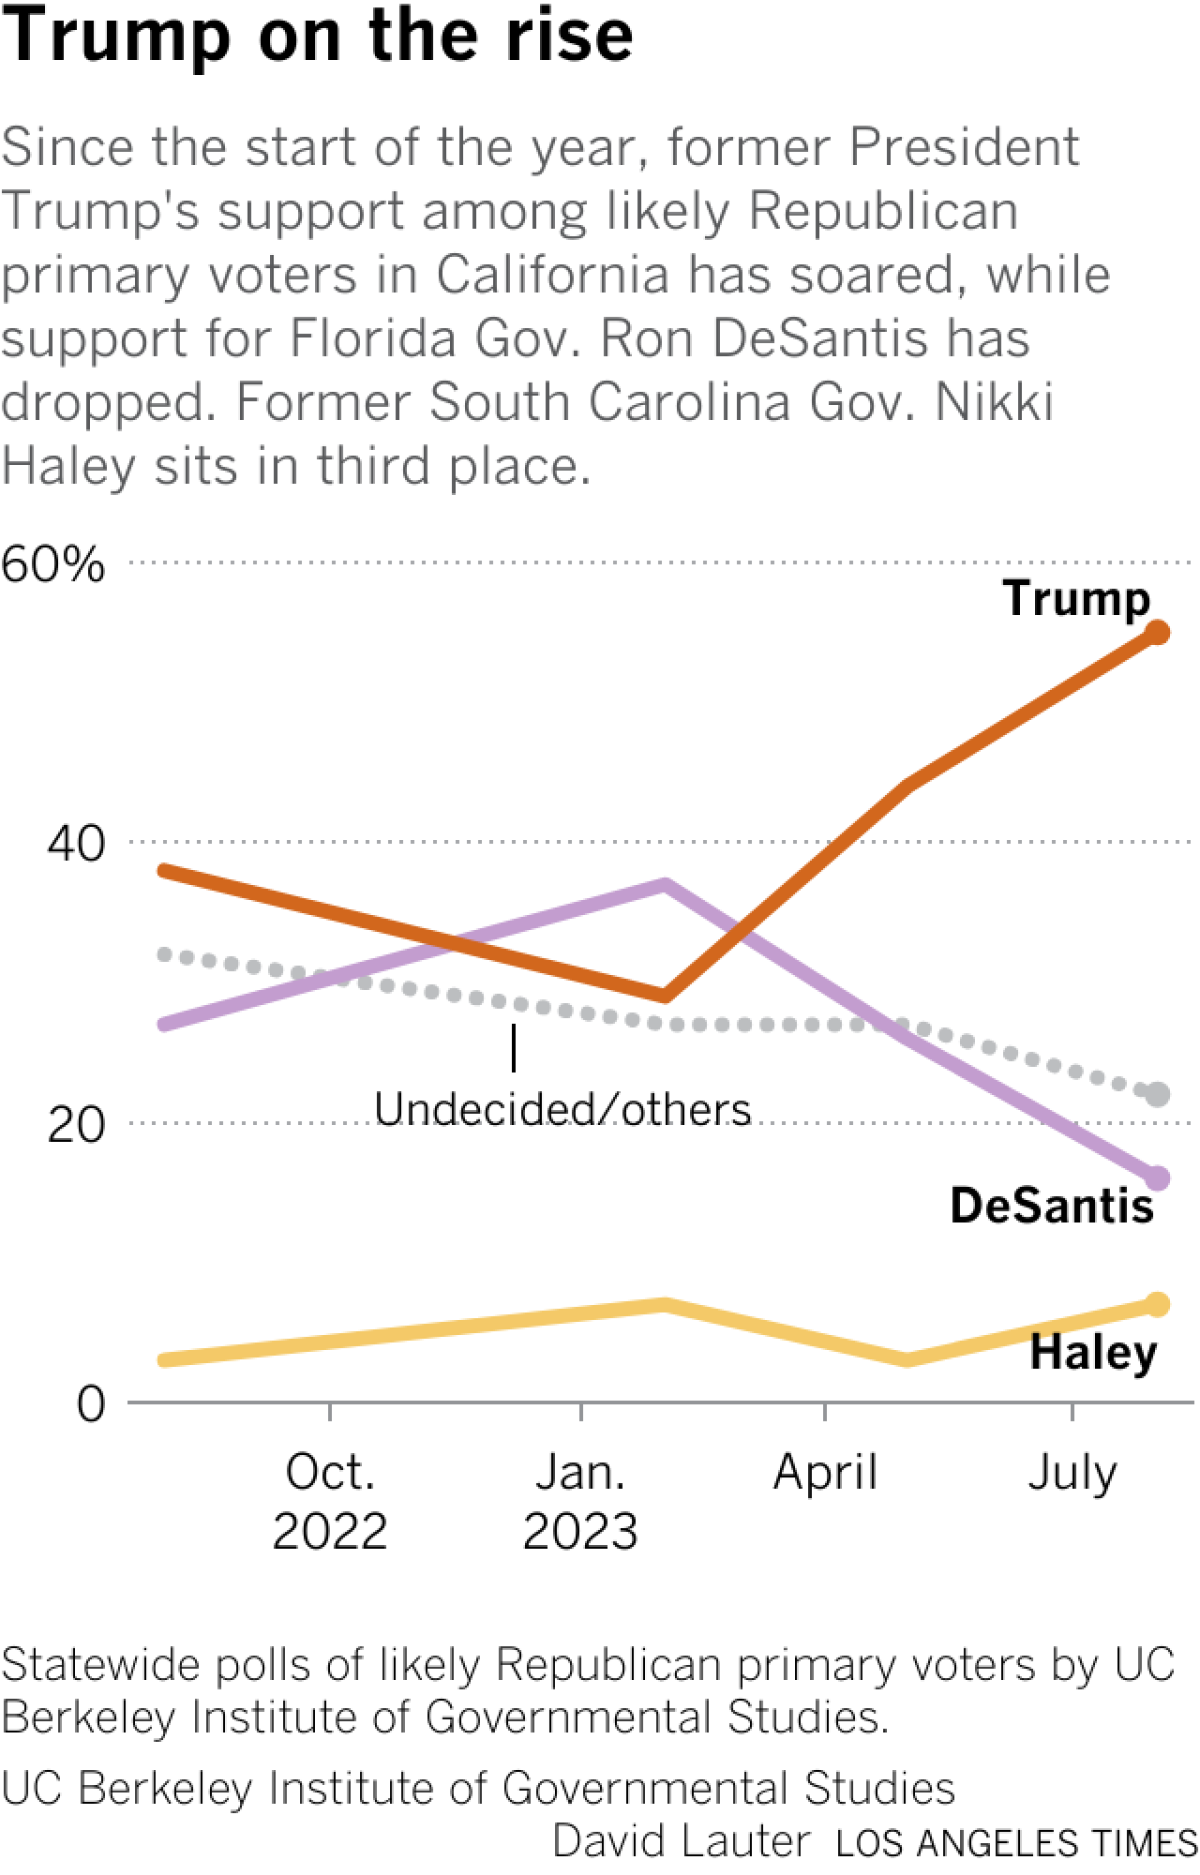 Kaliforniya'daki muhtemel Cumhuriyetçi ön seçmenler arasında eski Başkan Trump'ın desteğini gösteren grafik yükselirken, Florida Valisi Ron DeSantis'e verilen destek düştü.  Eski Güney Carolina Valisi Nikki Haley üçüncü sırada yer alıyor.